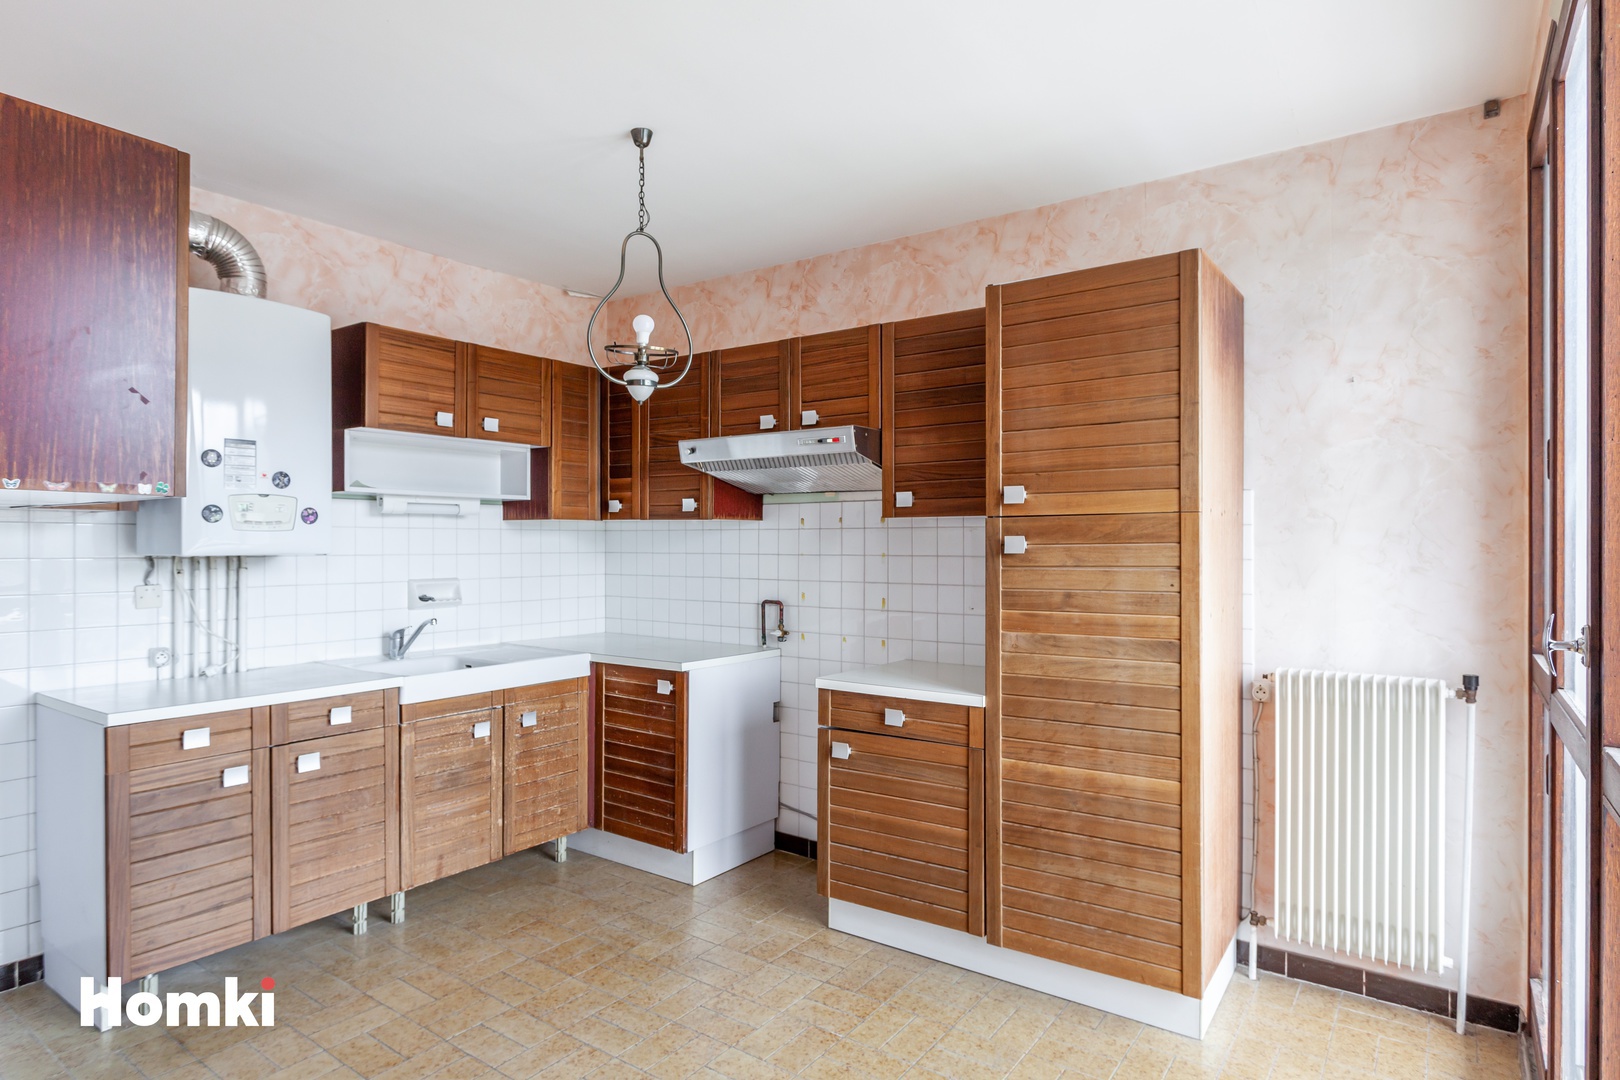 Homki - Vente Appartement  de 43.0 m² à Échirolles 38130